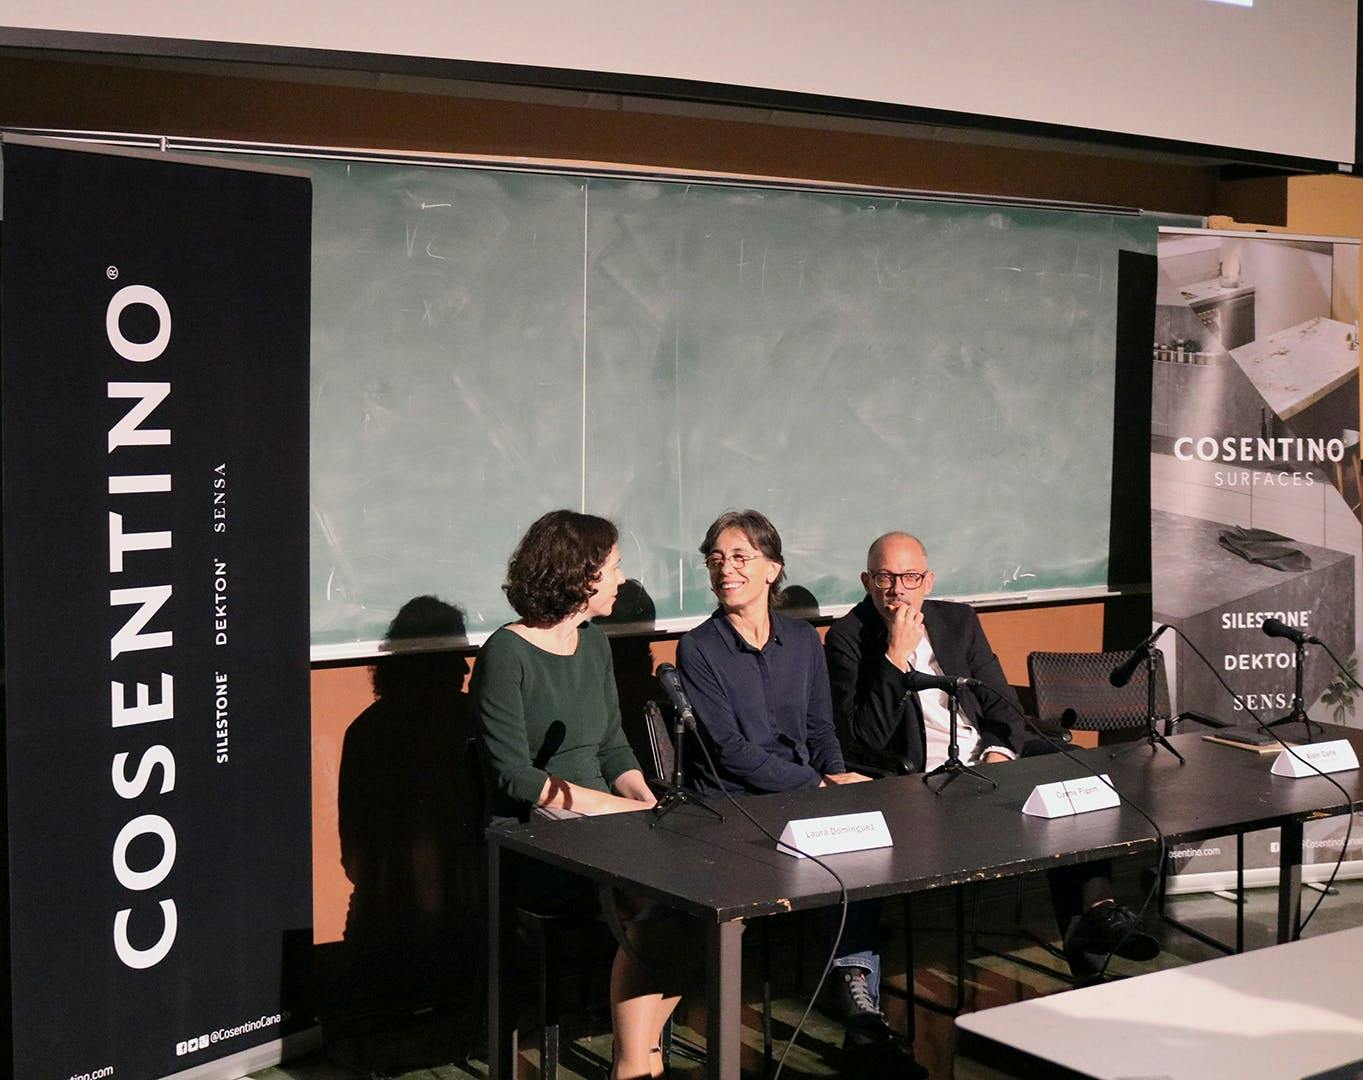 Image 33 of Conferencia en Escuela de Arquitectura de la Universidad McGill de Montreal Made in Spain Cosentino 1 in Cosentino with "MadeinSpain" 2018 - Cosentino